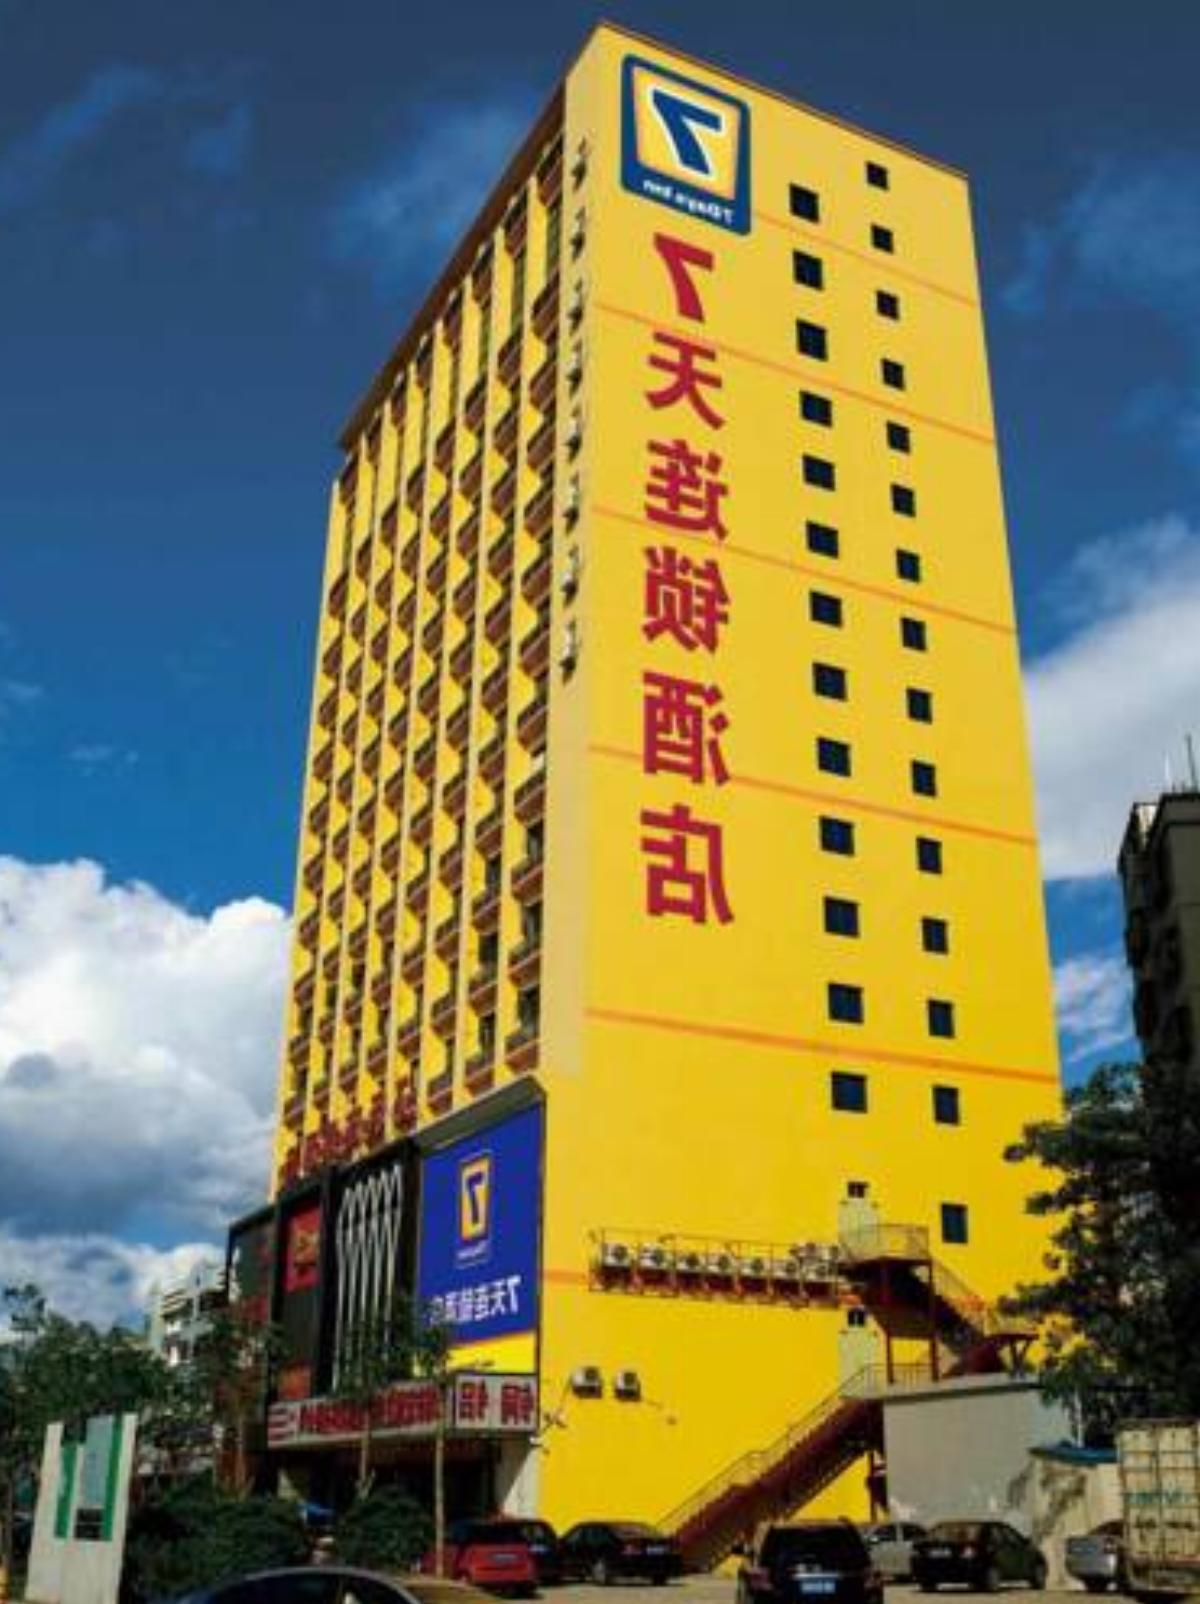 7Days Inn Shantou Dong Shan Road Hotel Chaoyang China